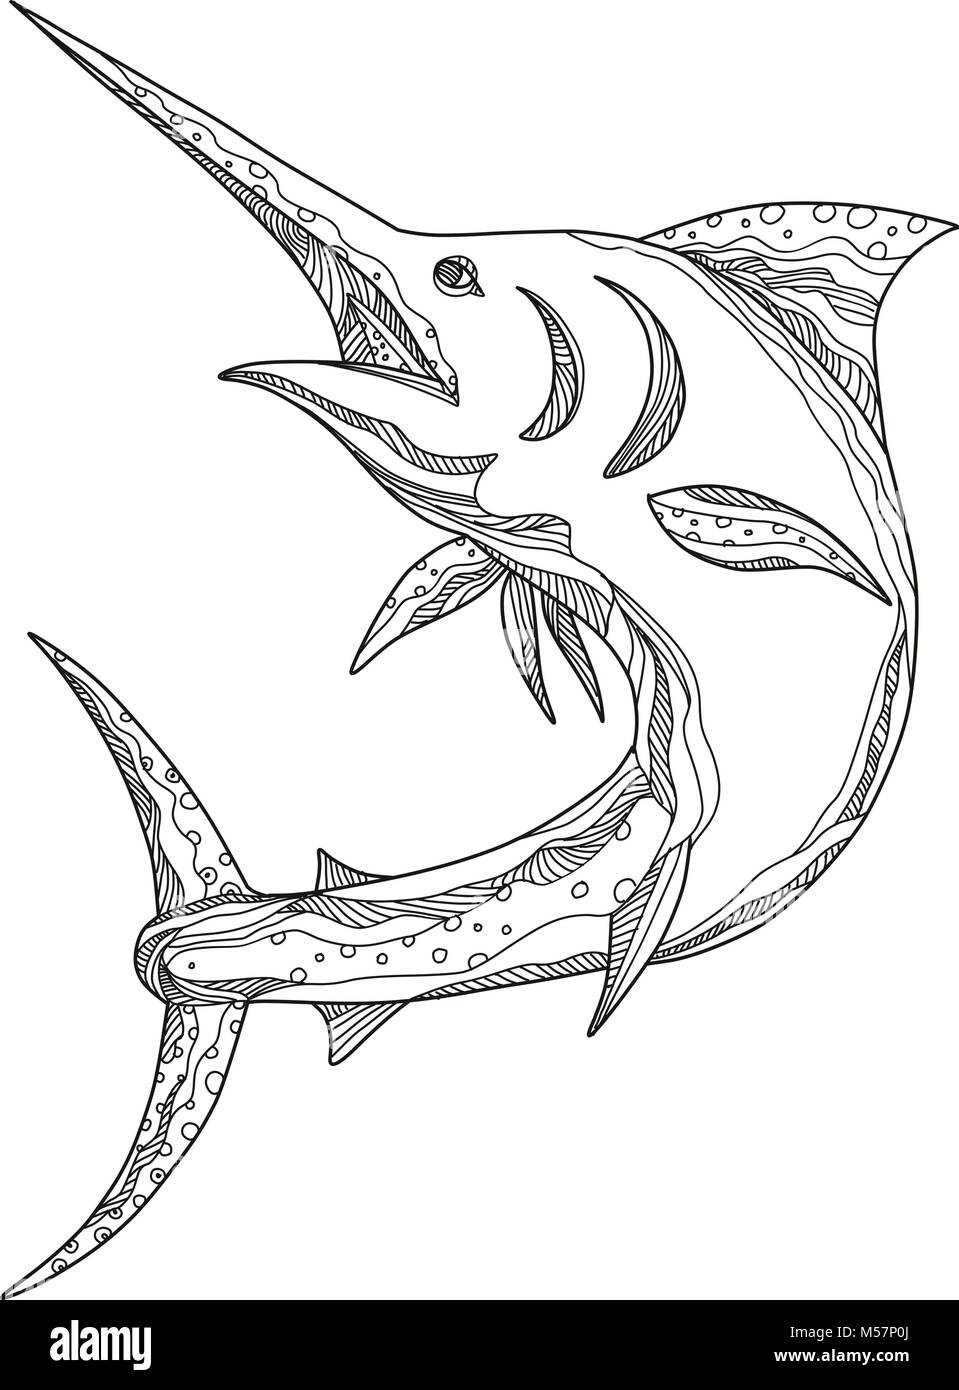 Doodle art ilustración de una aguja azul del Atlántico, una especie endémica de marlin al Océano Atlántico jumping realizado en estilo mandala. Ilustración del Vector